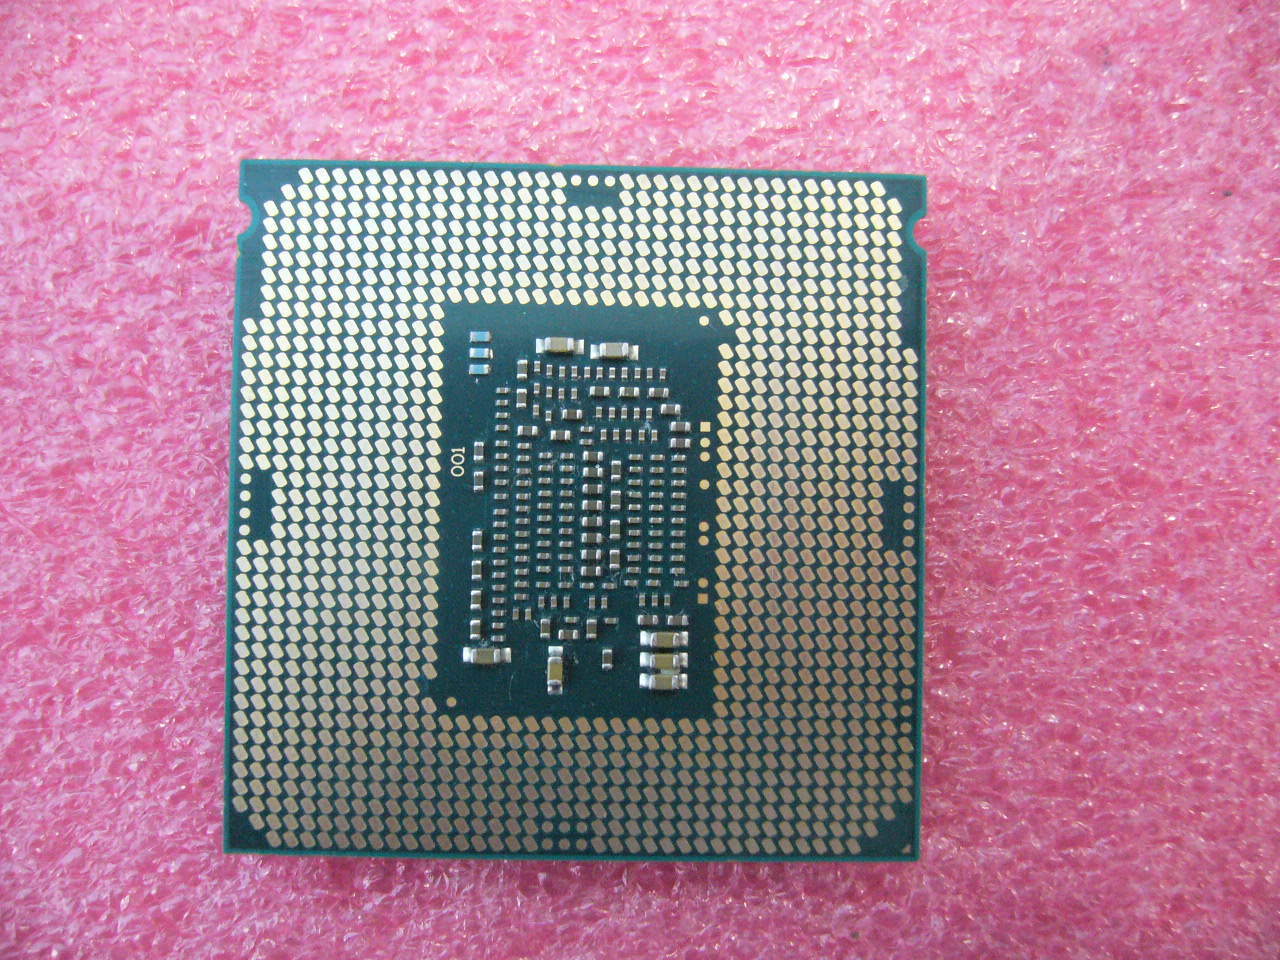 QTY 1x Intel CPU i5-6500TE Quad-Cores 2.30Ghz 6MB LGA1151 SR2LR NOT WORKING - zum Schließen ins Bild klicken